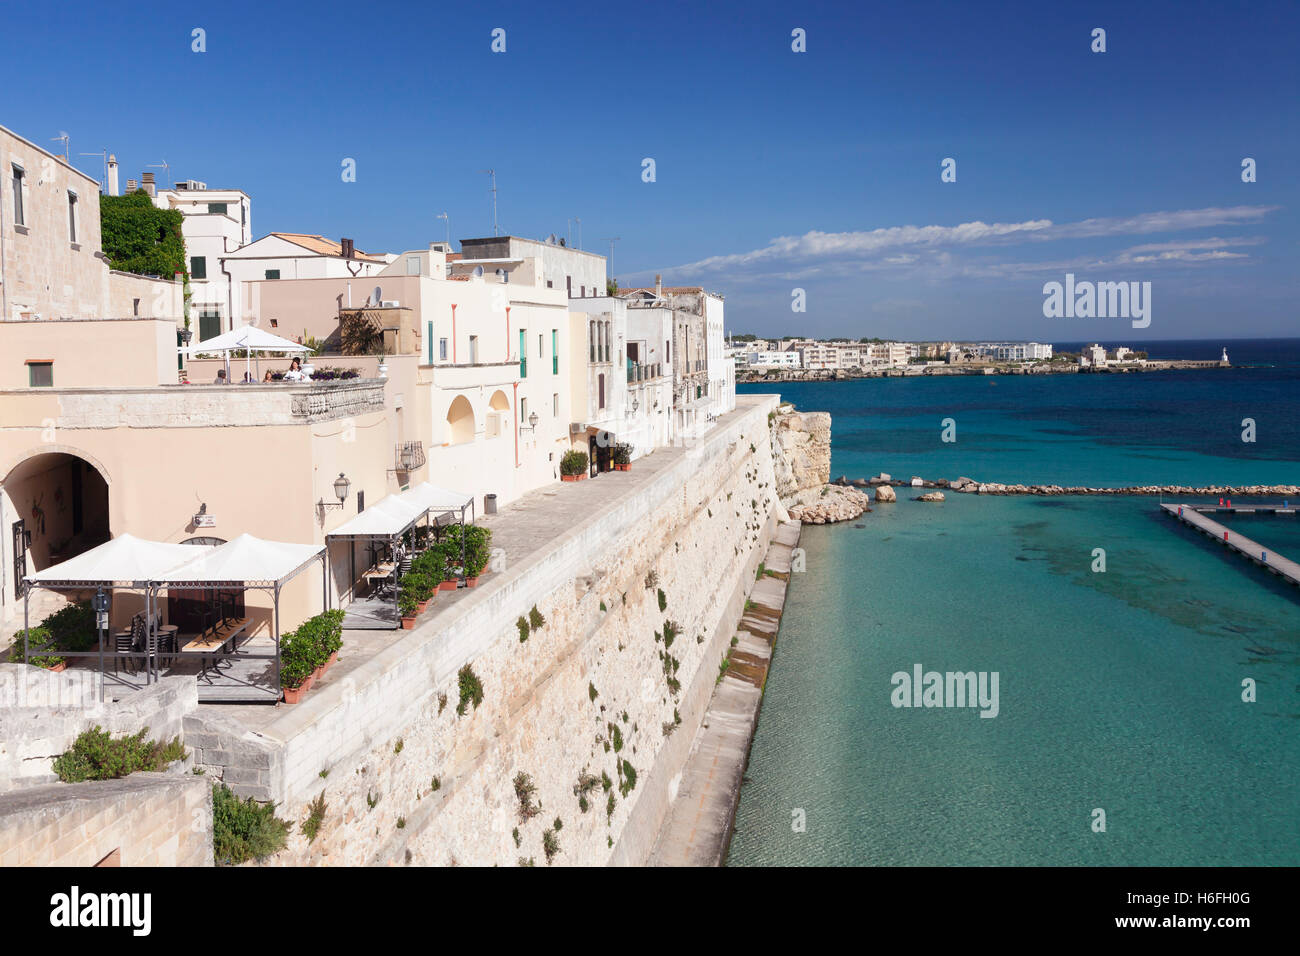 Centro histórico de Otranto, Provincia de Lecce, la península de Salento, Puglia, Italia Foto de stock